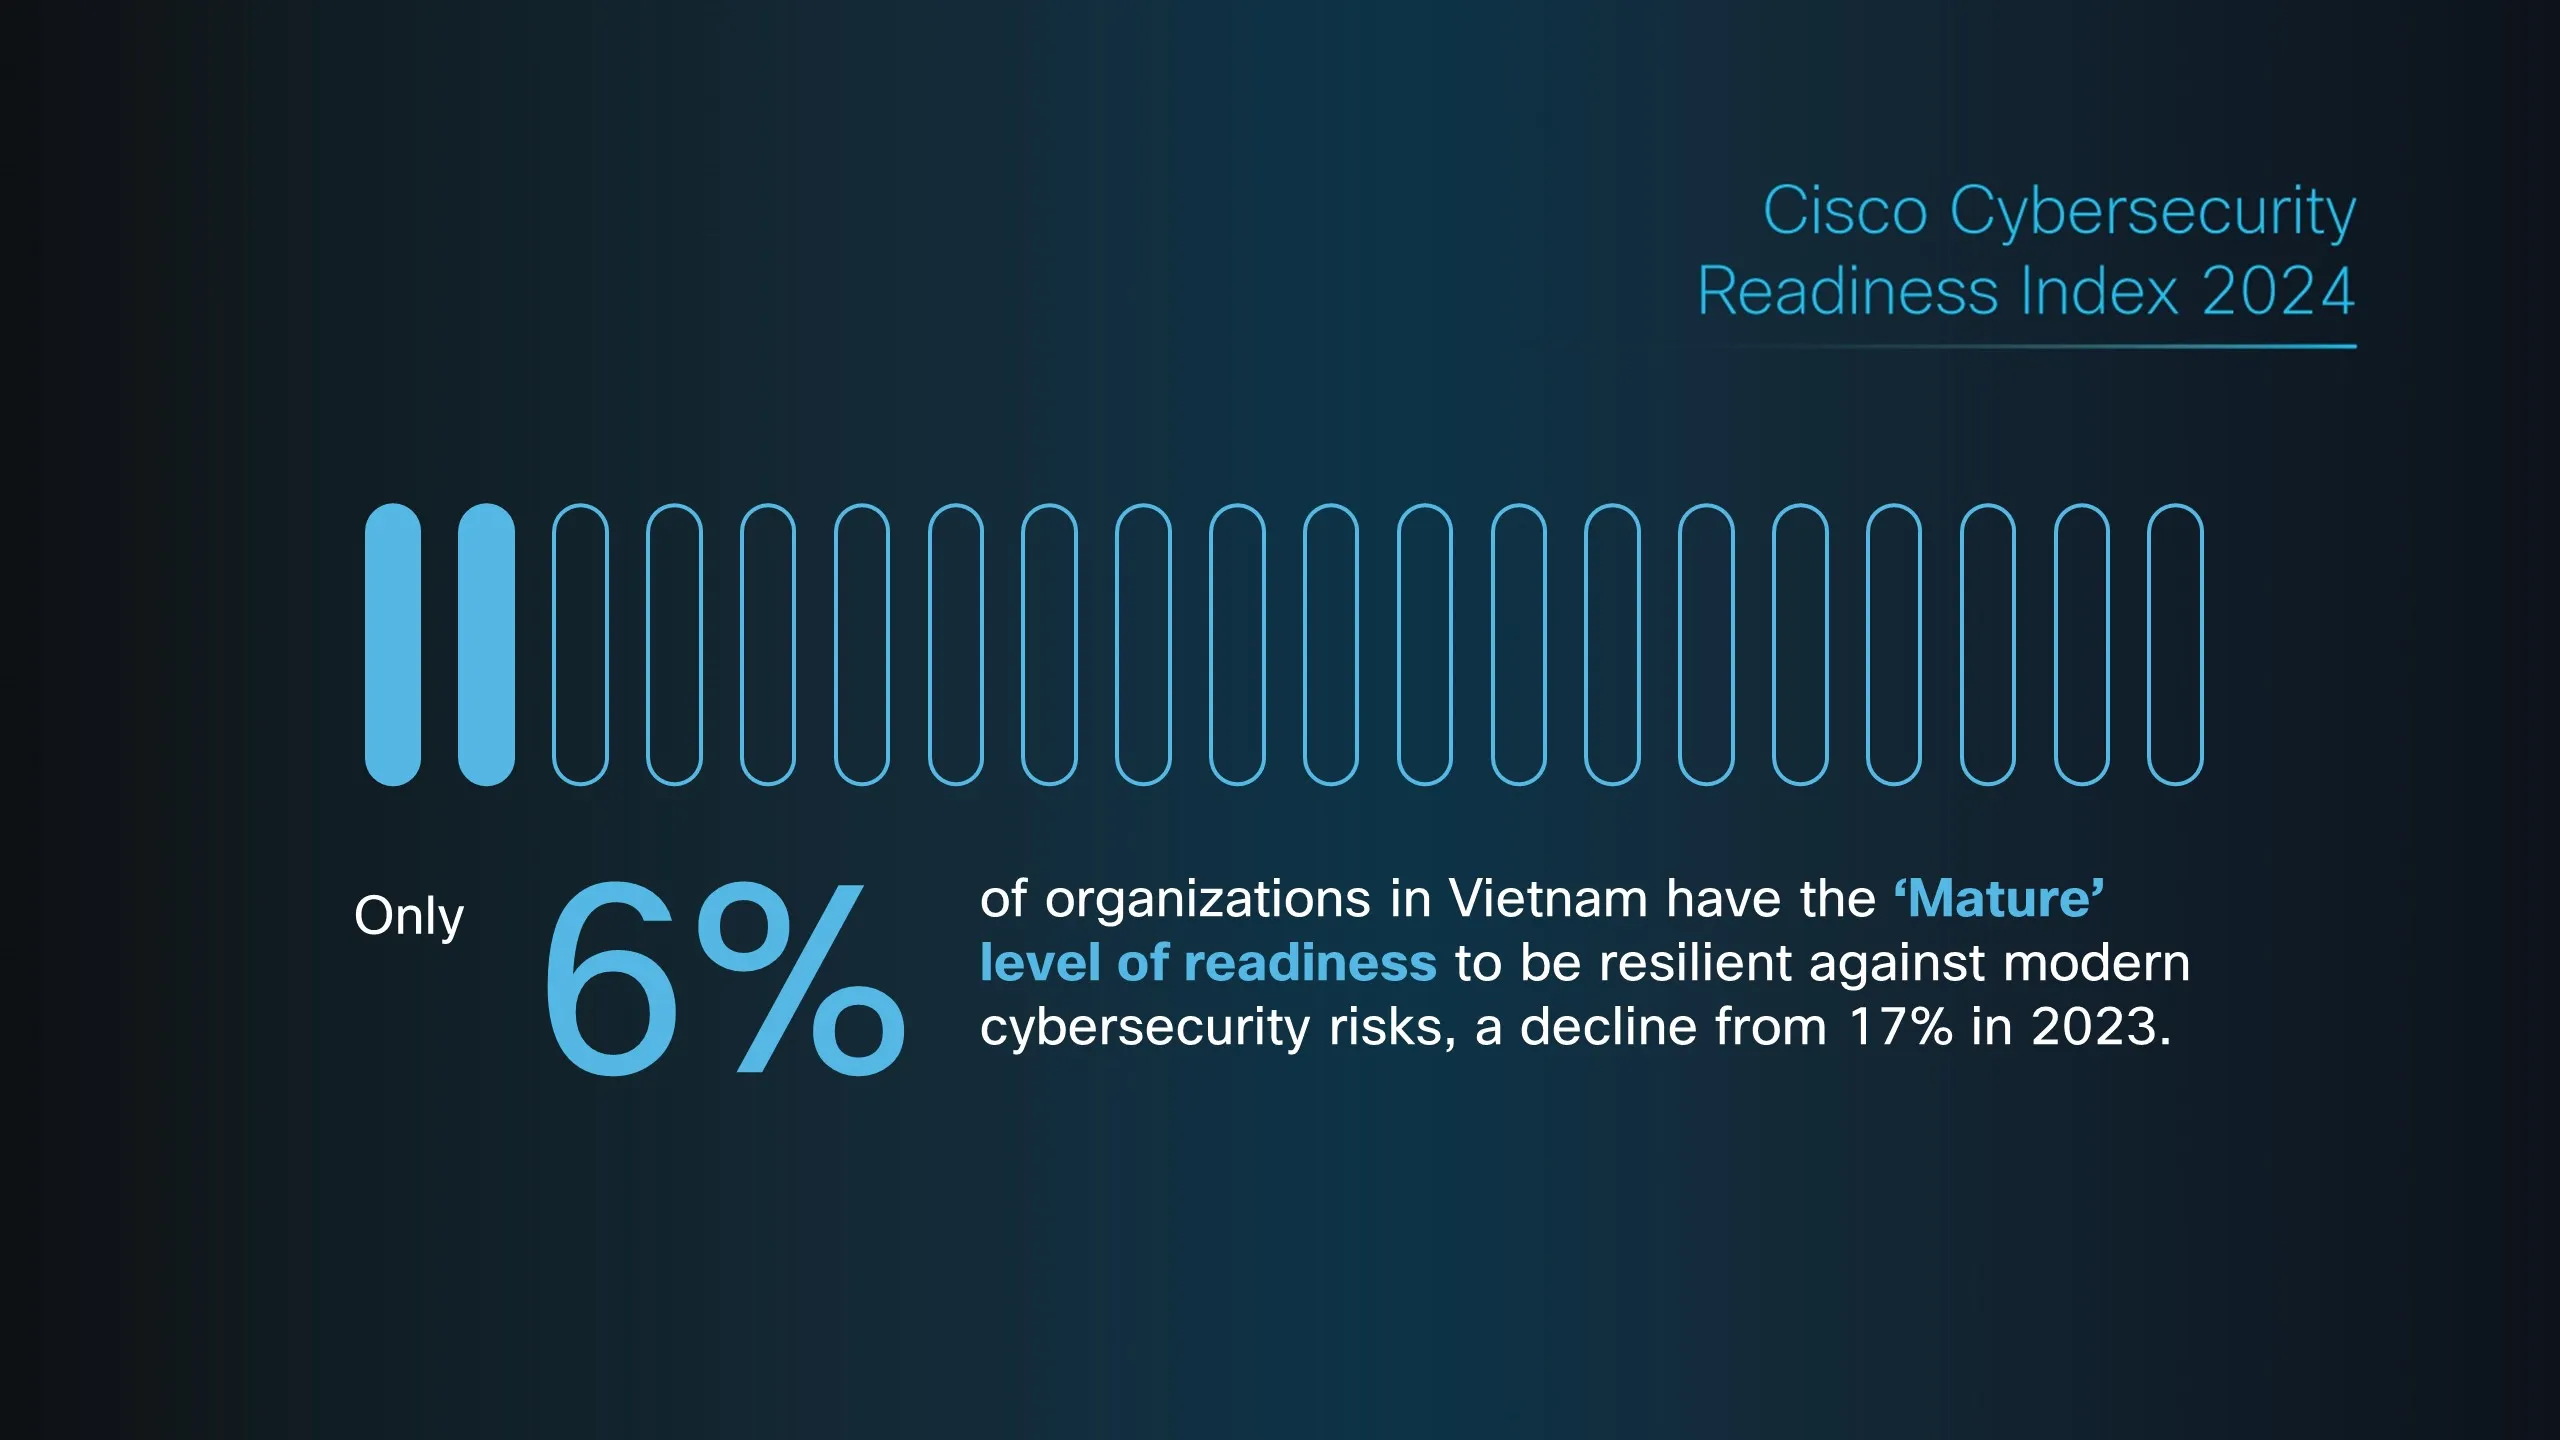 Báo cáo của Cisco tiết lộ rằng chỉ có một số ít tổ chức tại Việt Nam đã chuẩn bị đủ để sẵn sàng đối phó với những rủi ro về an ninh mạng đang ngày càng gia tăng